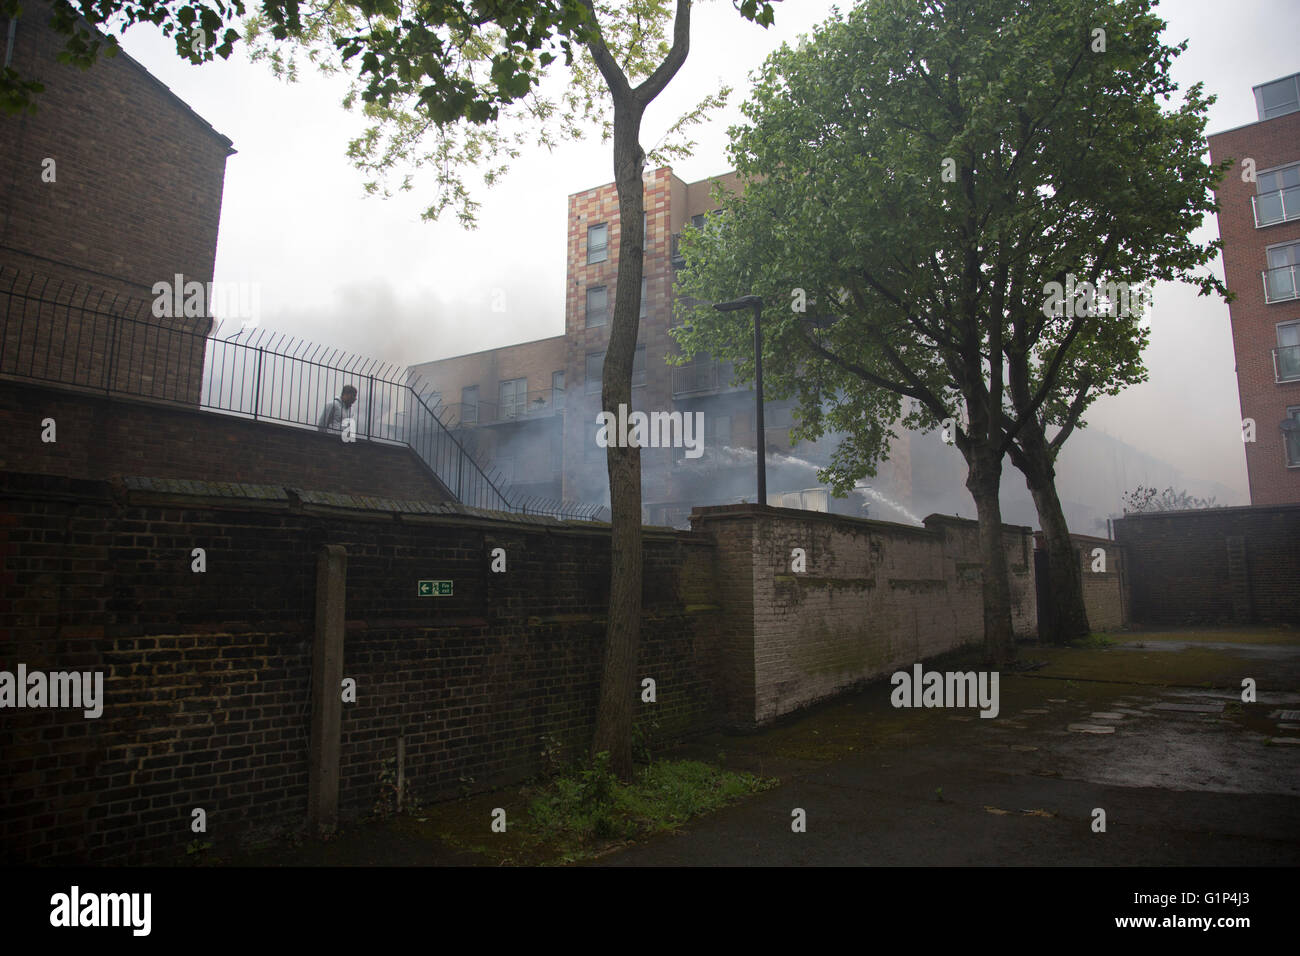 Les habitants regardent le fire Crew s'attaquer à un incendie dans un immeuble d'appartements à Brodlove Lane à Wapping, Londres, Royaume-Uni. Selon les sources, l'incendie était peut-être due à des bouteilles de gaz qui ont été dans une cour de constructeurs à la base du bâtiment. Un résident local a dit qu'il y avait souvent des incendies dans cette région, bien qu'il ne savait pas quelle en était la cause. Banque D'Images